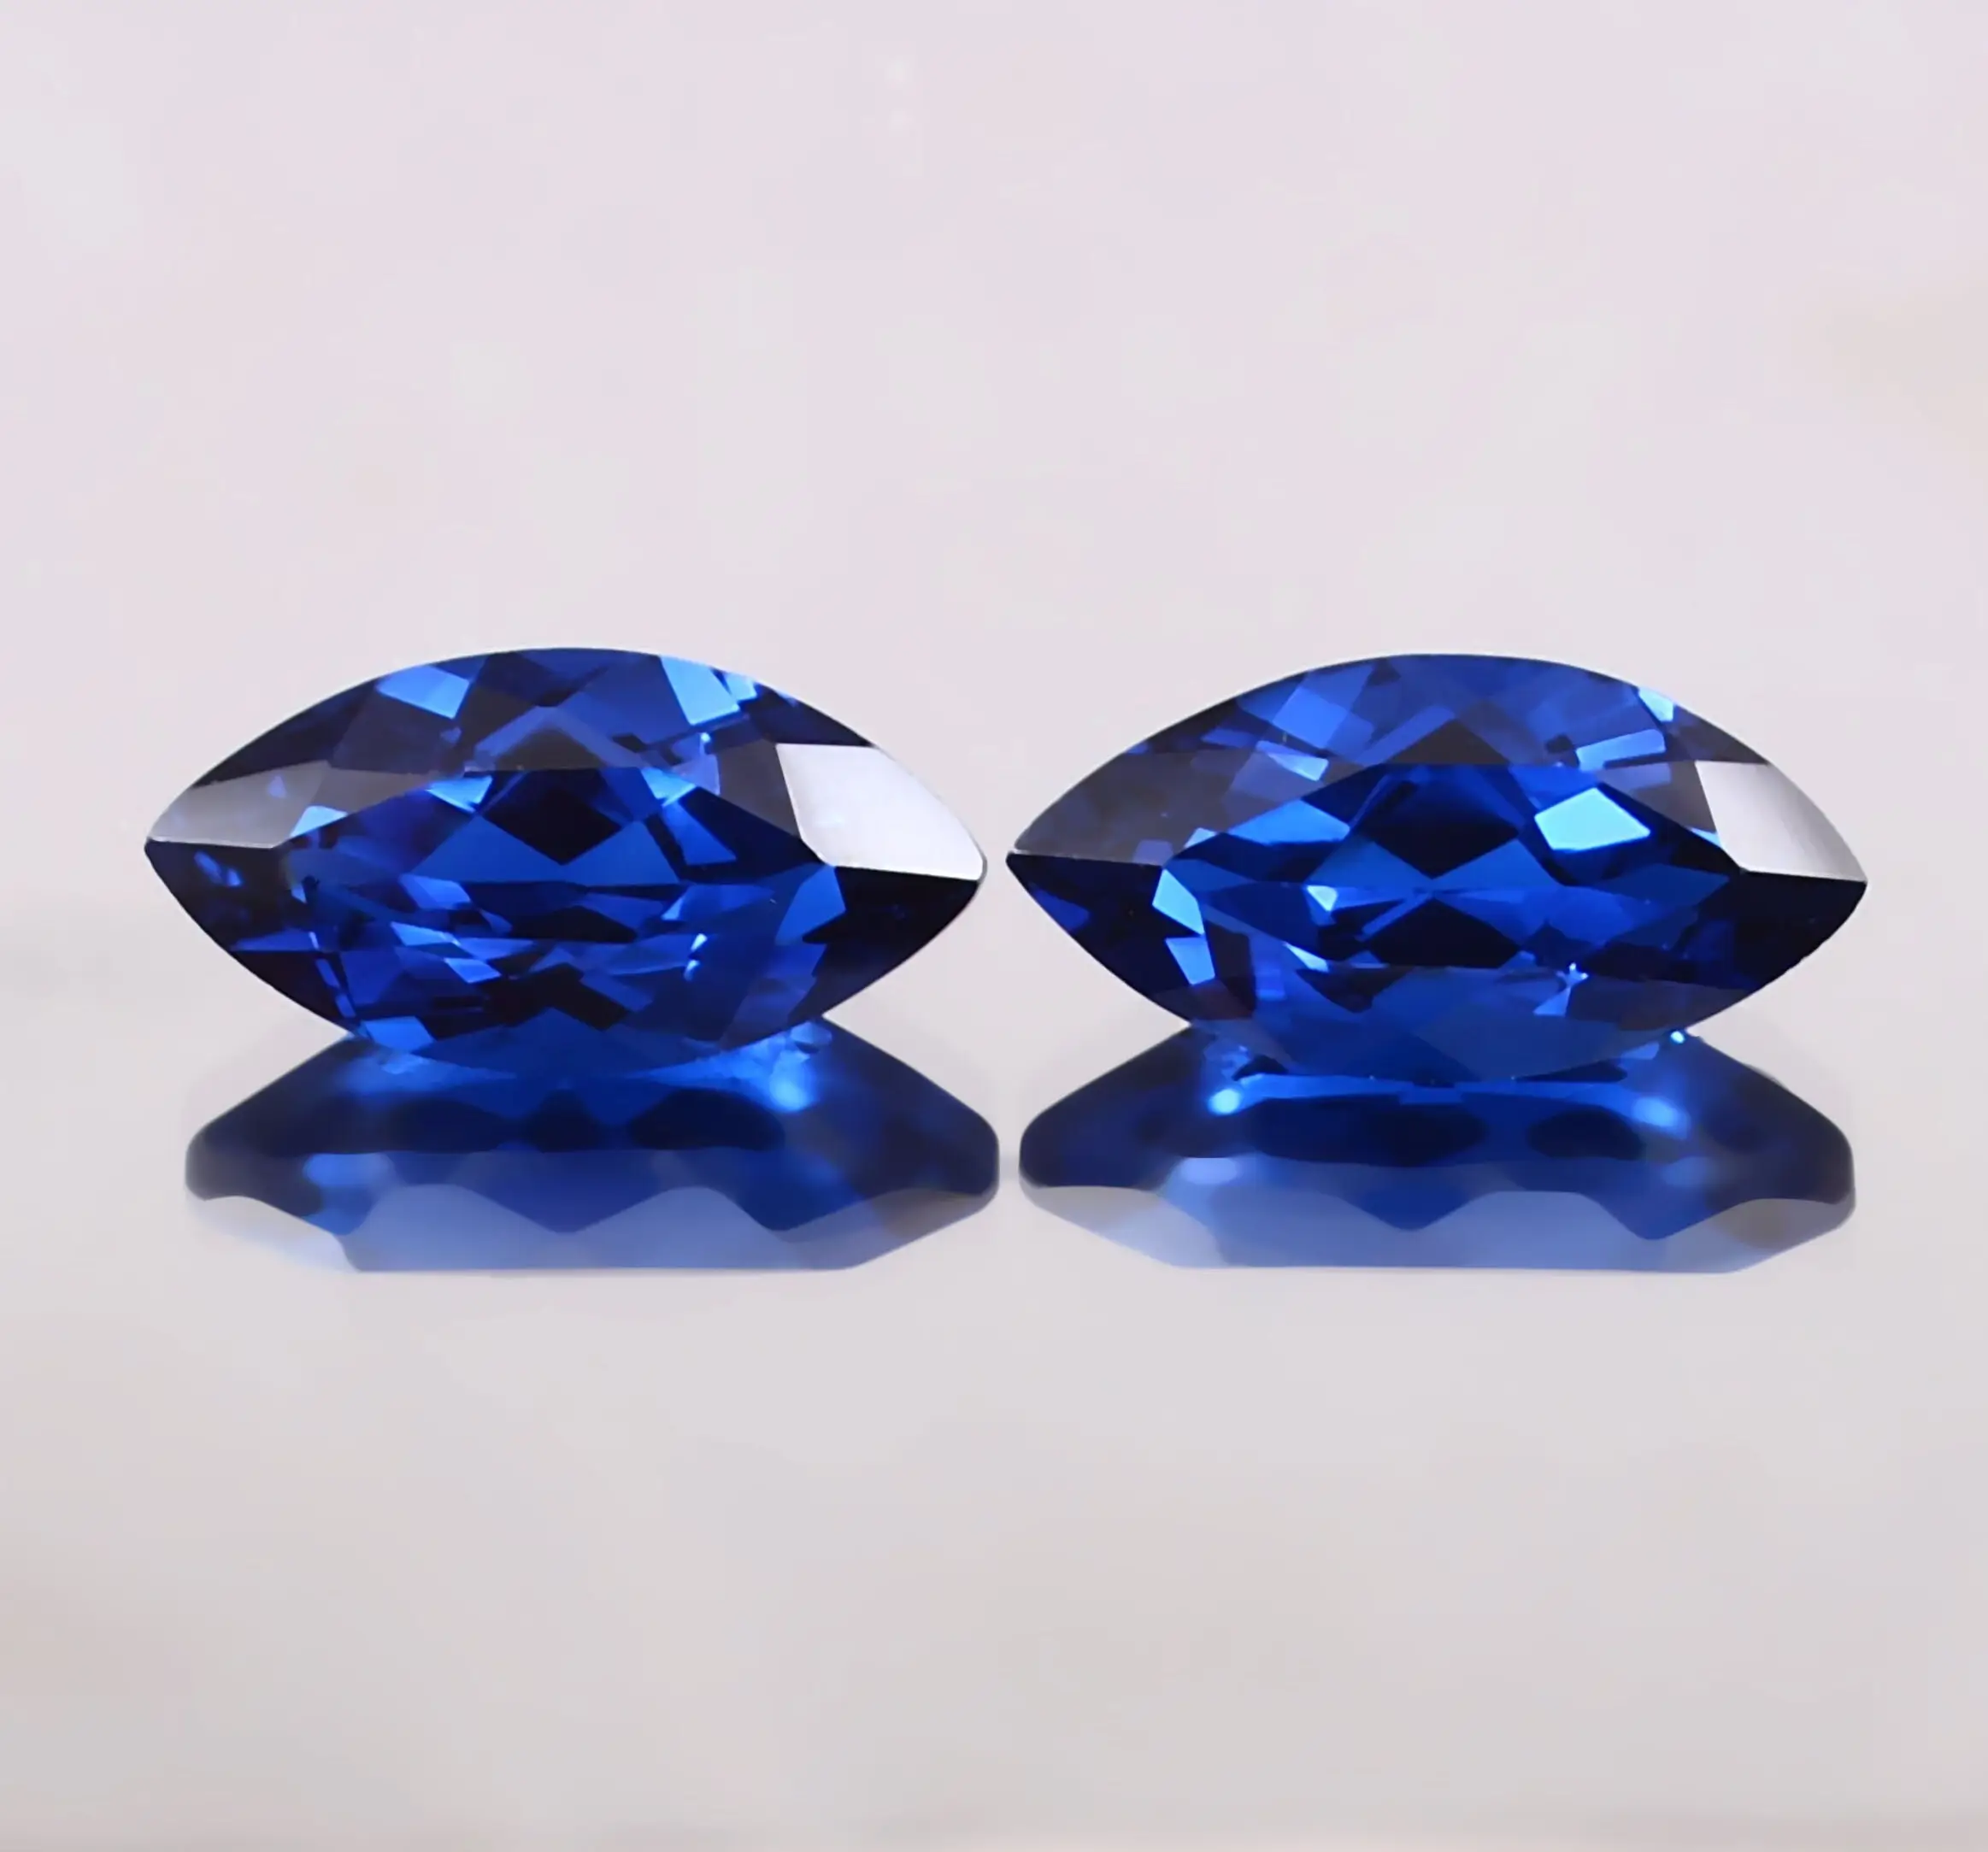 Ausgezeichnetes Labor blaues Saphir lockerer Marquis-Edelstein lockerer blauer Saphir-Schnitt hochwertig kalibriert verfügbar 6 × 3 mm bis 15 × 30 mm